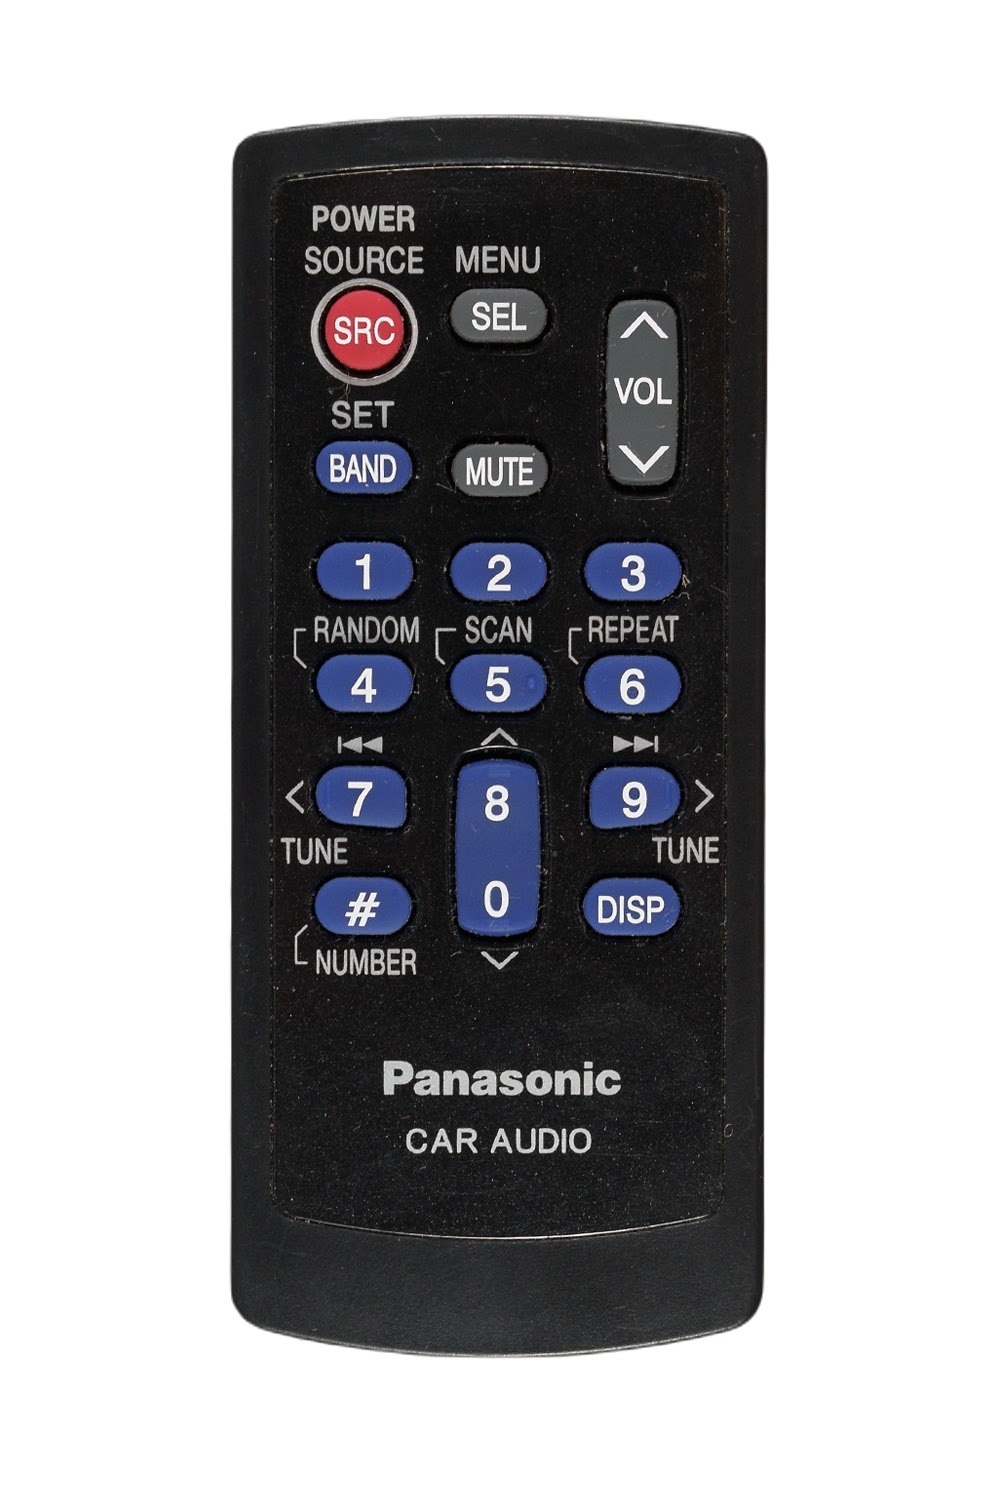 Оригинальный пульт для автомагнитолы Panasonic CAR AUDIO, фото